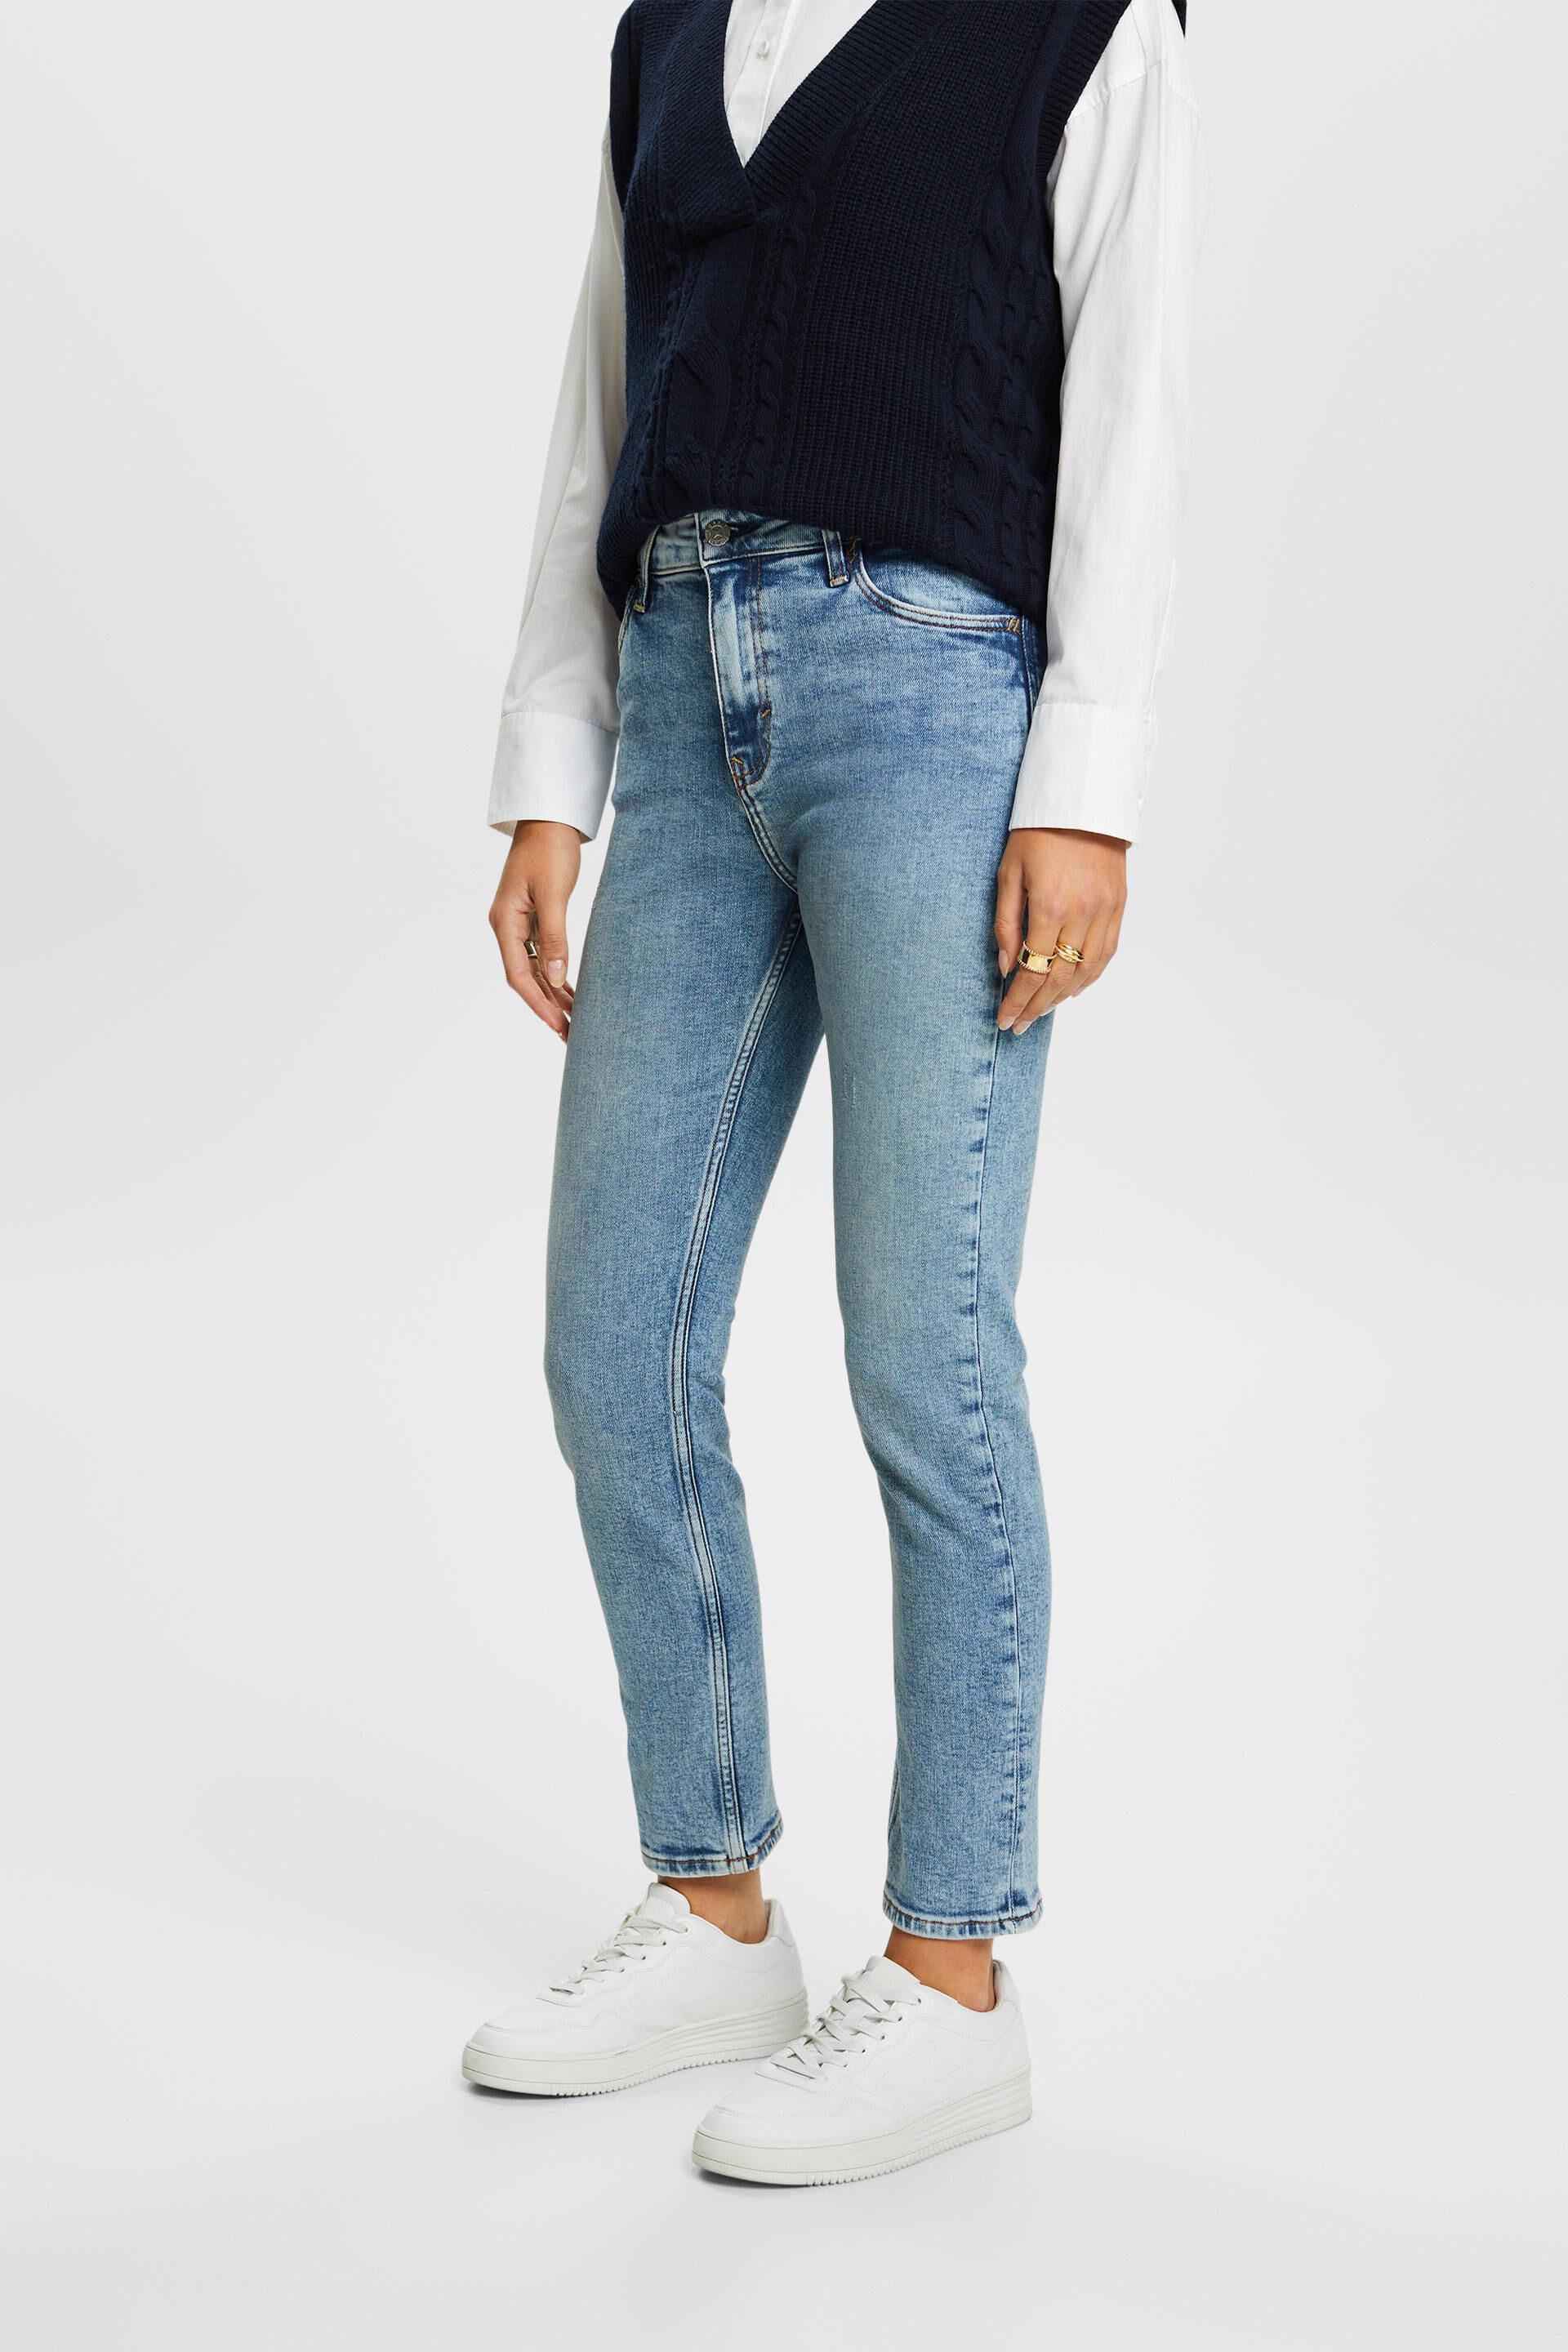 Esprit Premium fit stretch slim jeans